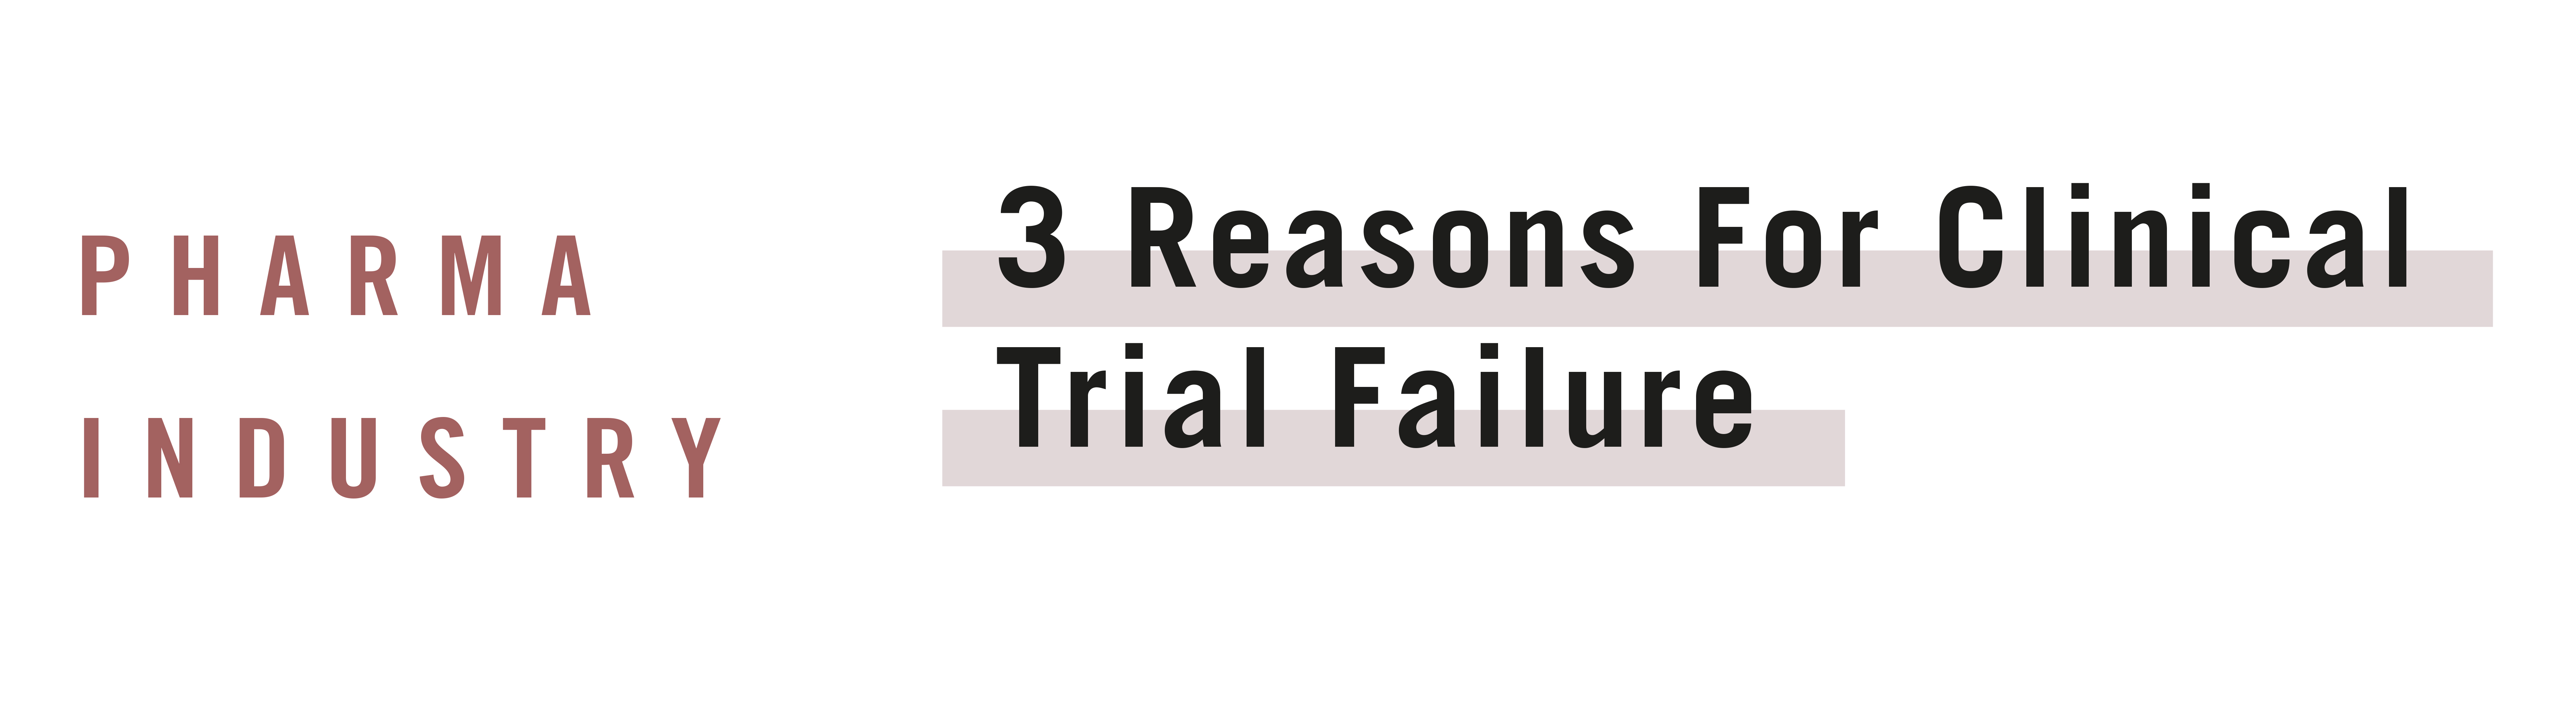 3 Reasons Why Clinical Trials Fail